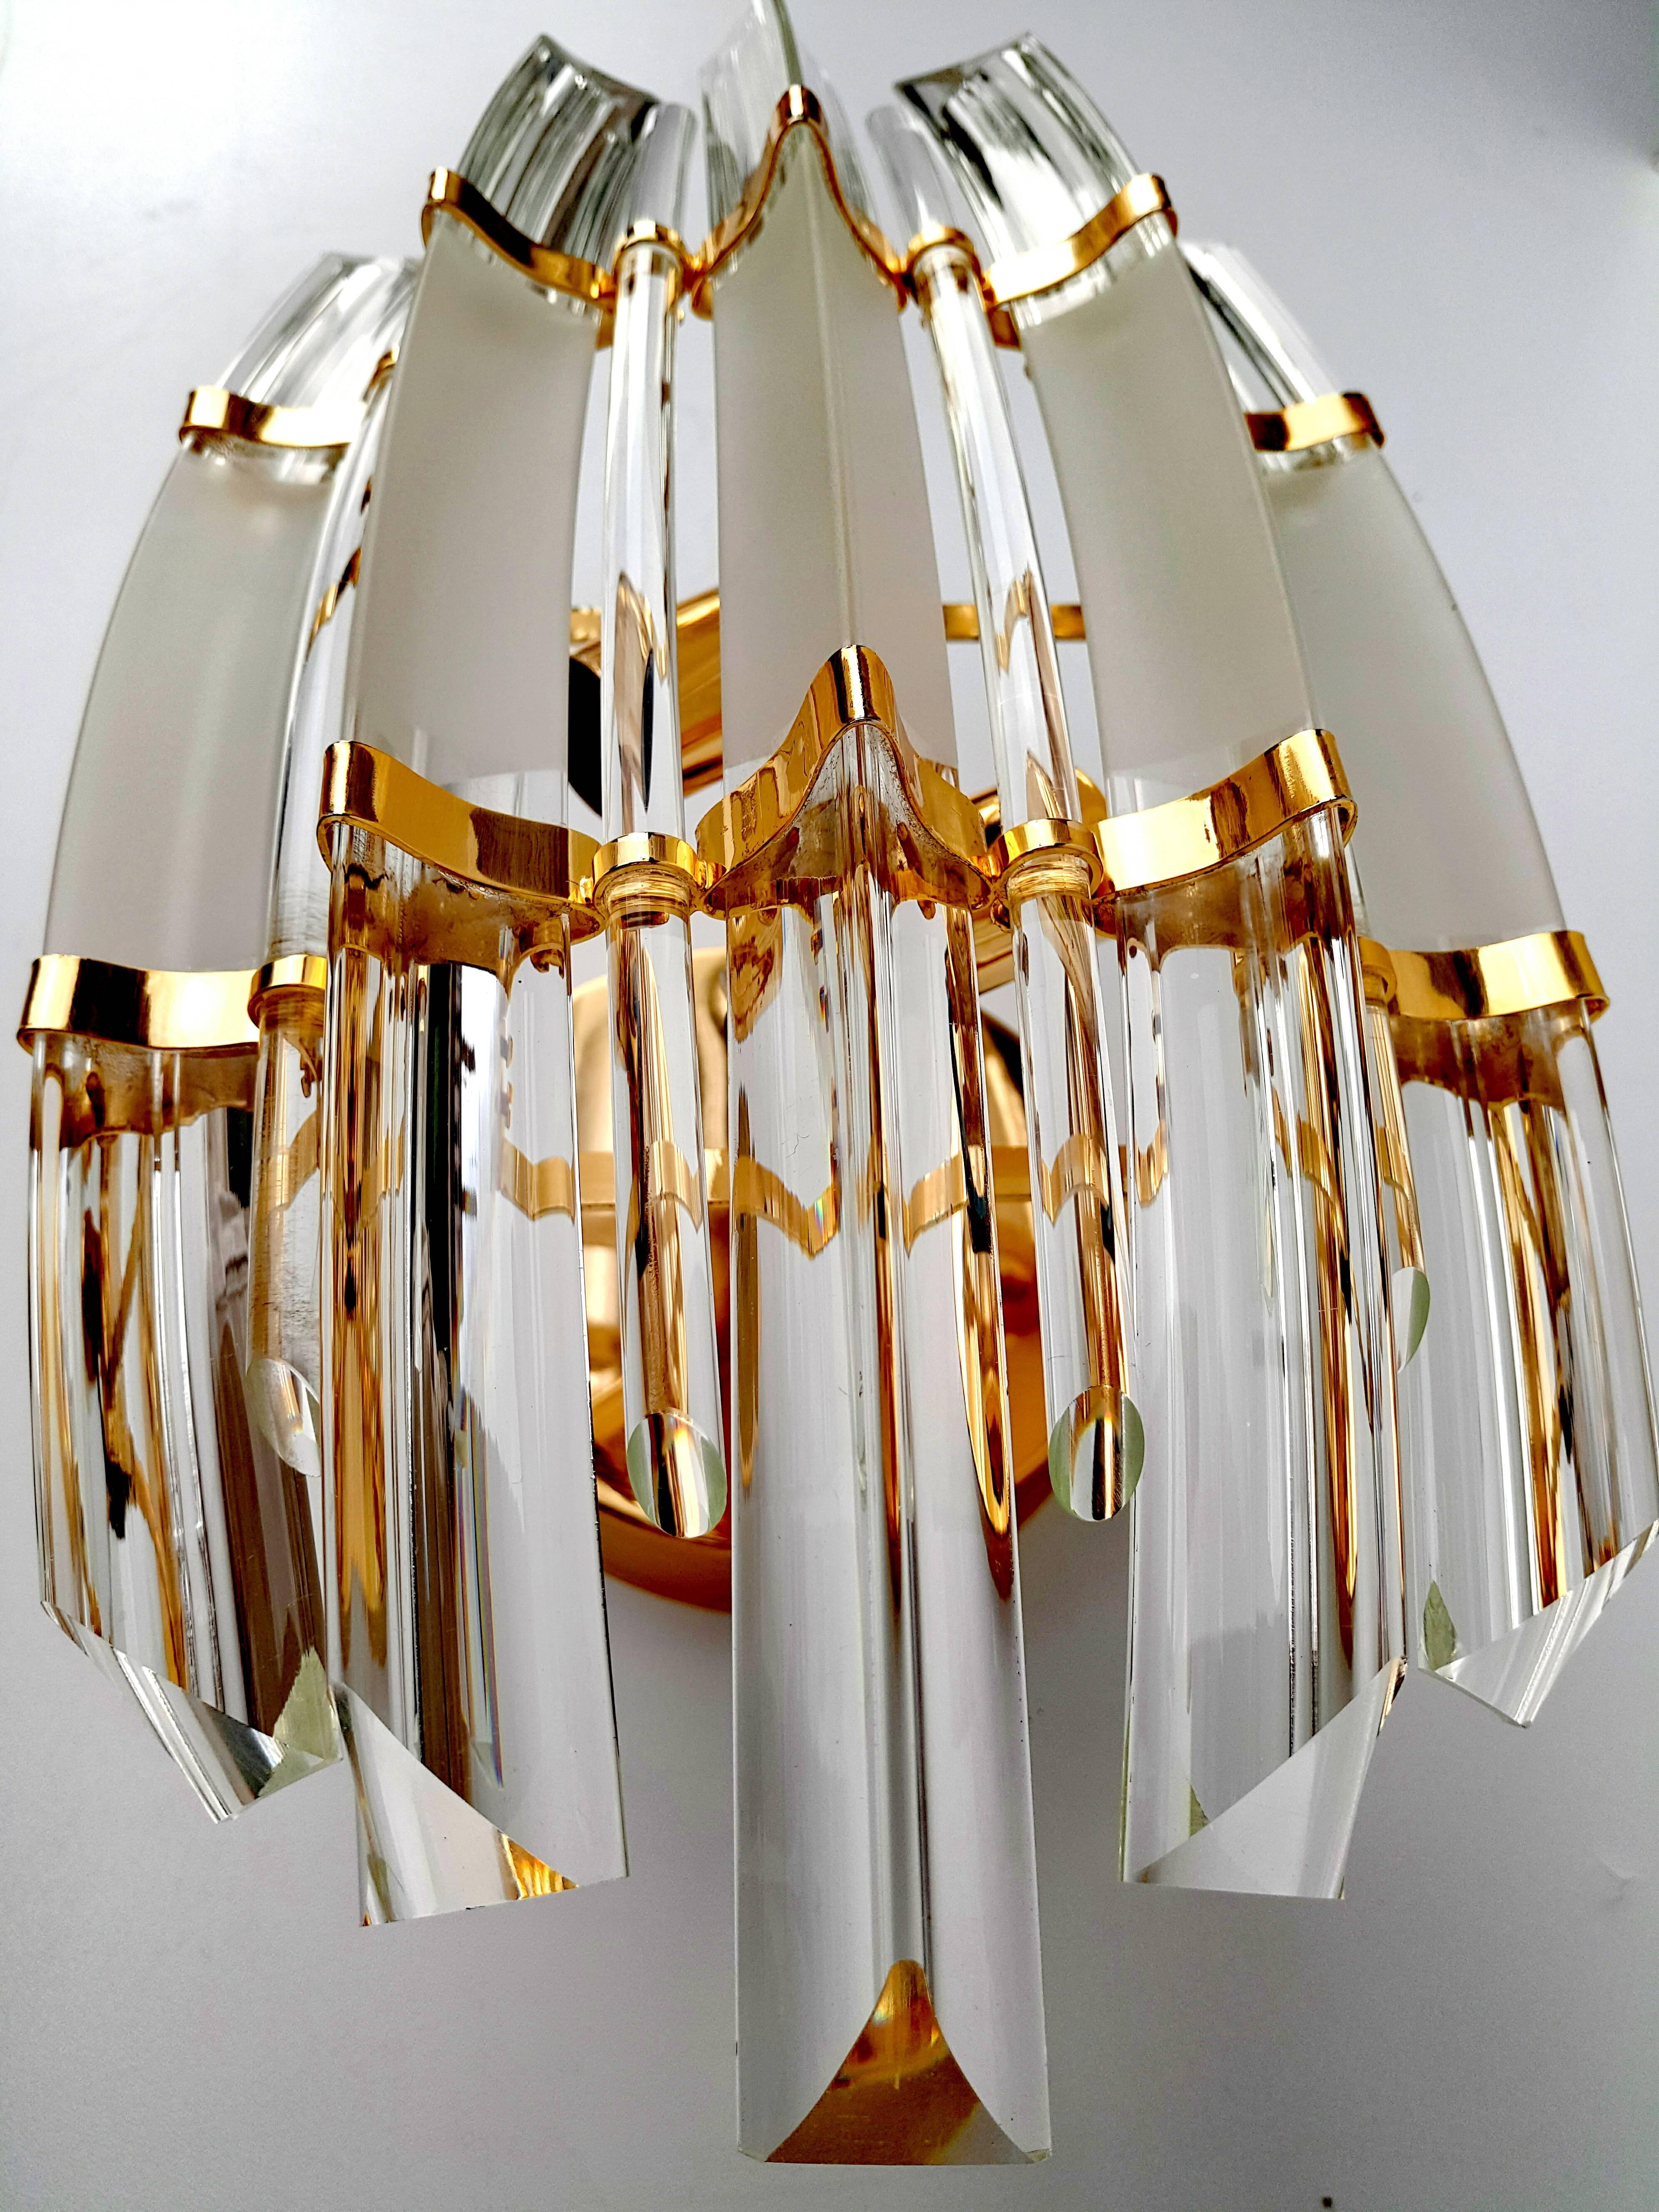 Hervorragende und massive Venini Muranoglas-Leuchten oder -Hängeleuchten, Italien, 1960er Jahre.
Sehr große Wandleuchte aus Muranoglas (21,65 cm) mit fünf langen Prismenstäben aus kristallklarem Glas, die jeweils in eine Messingstruktur eingebettet